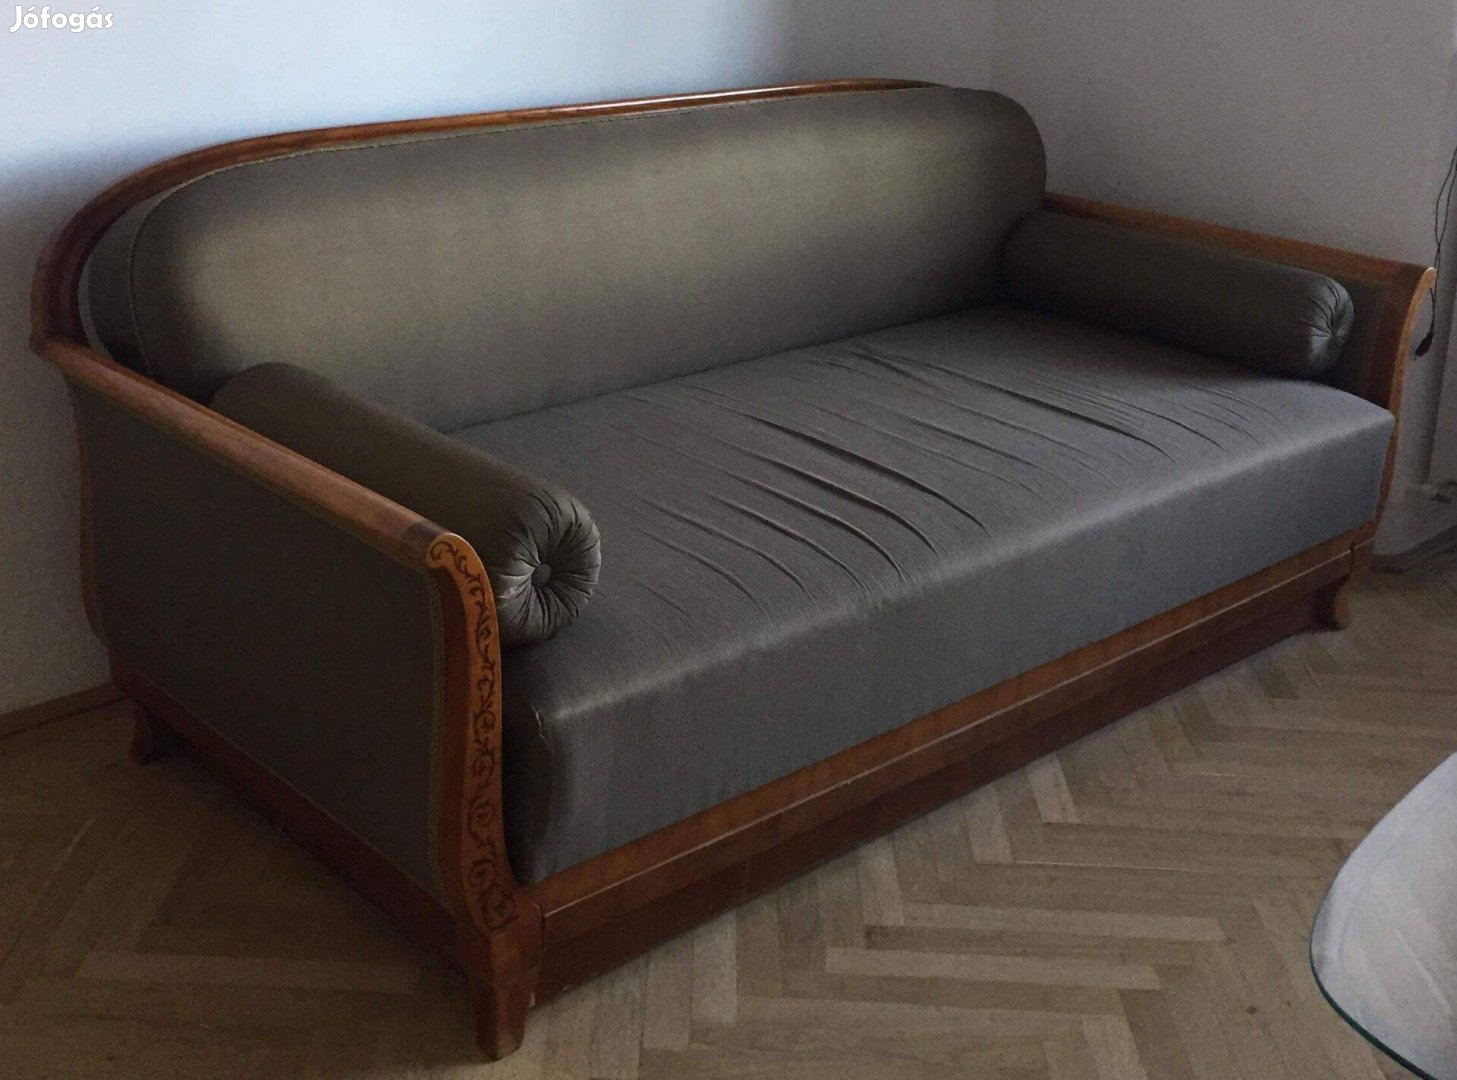 Biedermeier kanapéágy ölivazöld selyem huzattal